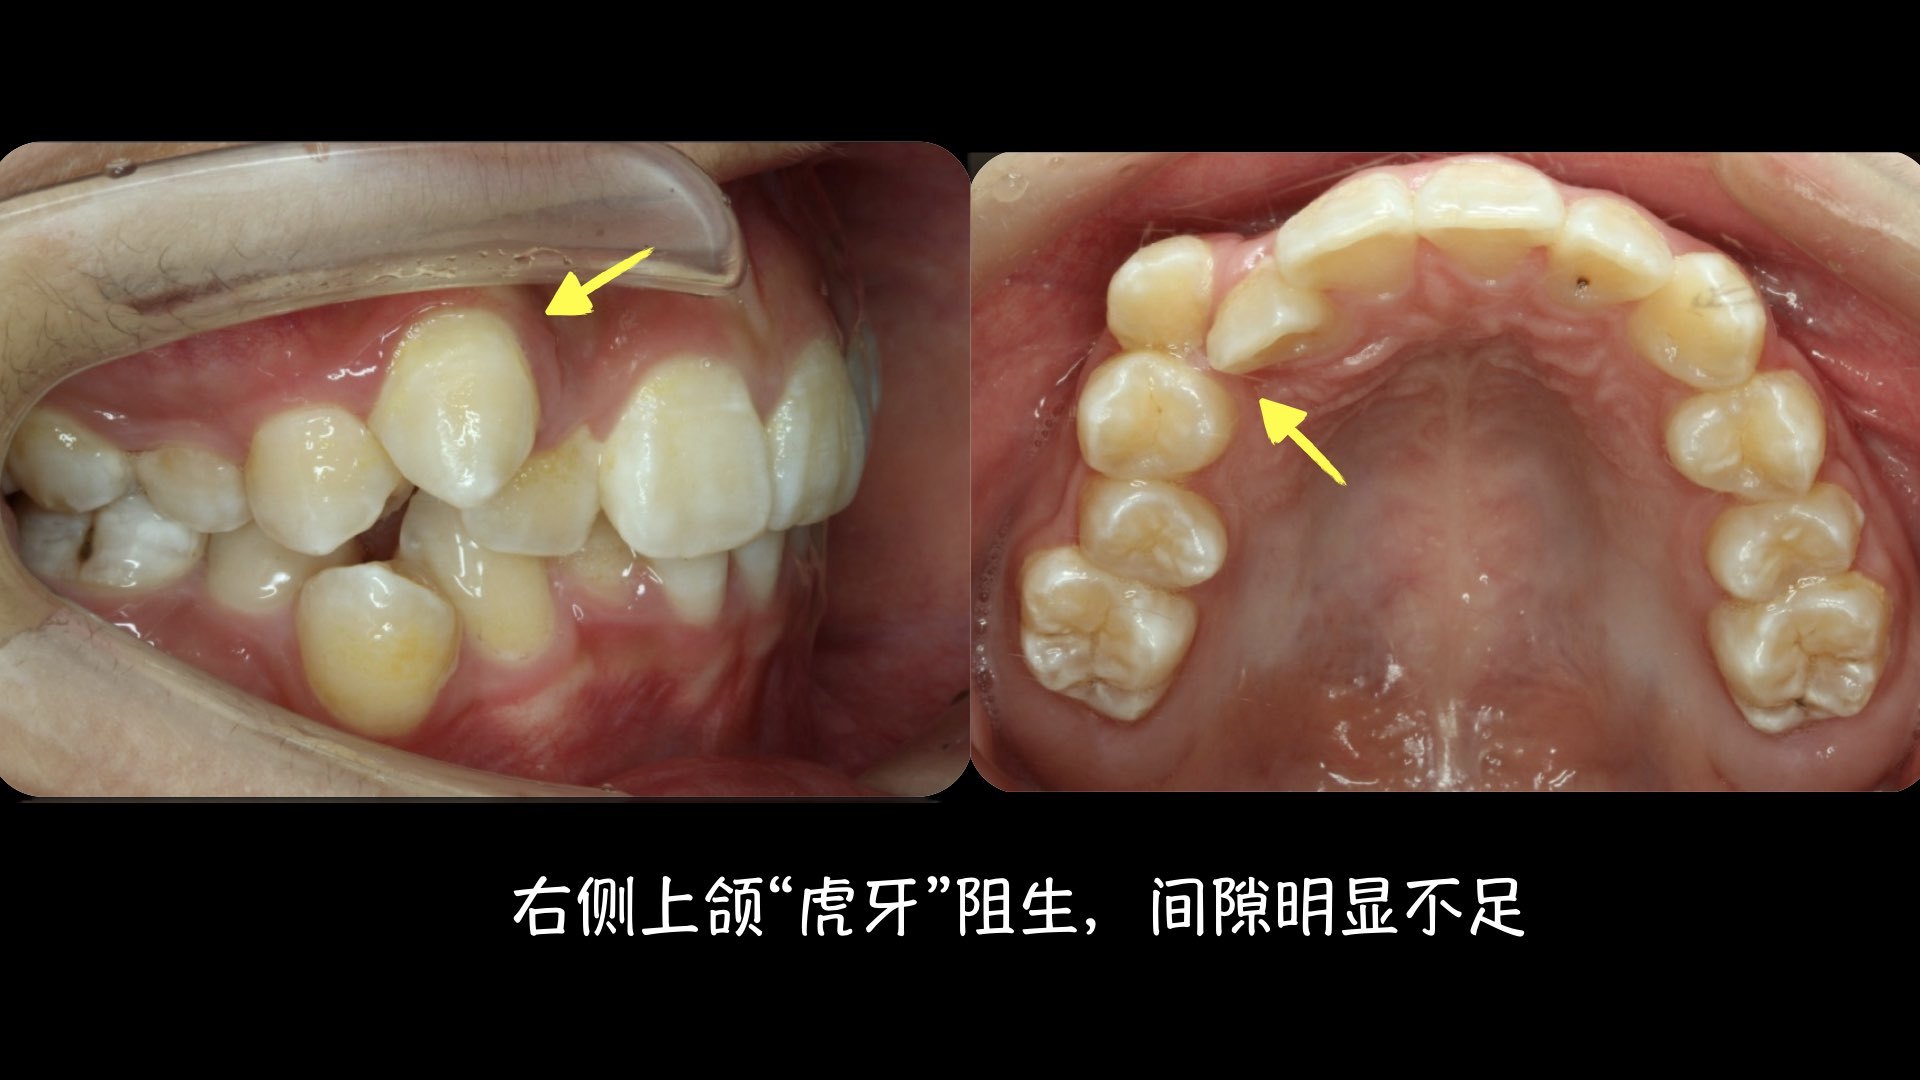 下面是三个" 虎牙 "非 拔牙 矫正的案例,治疗后牙齿排列整齐,笑容灿烂